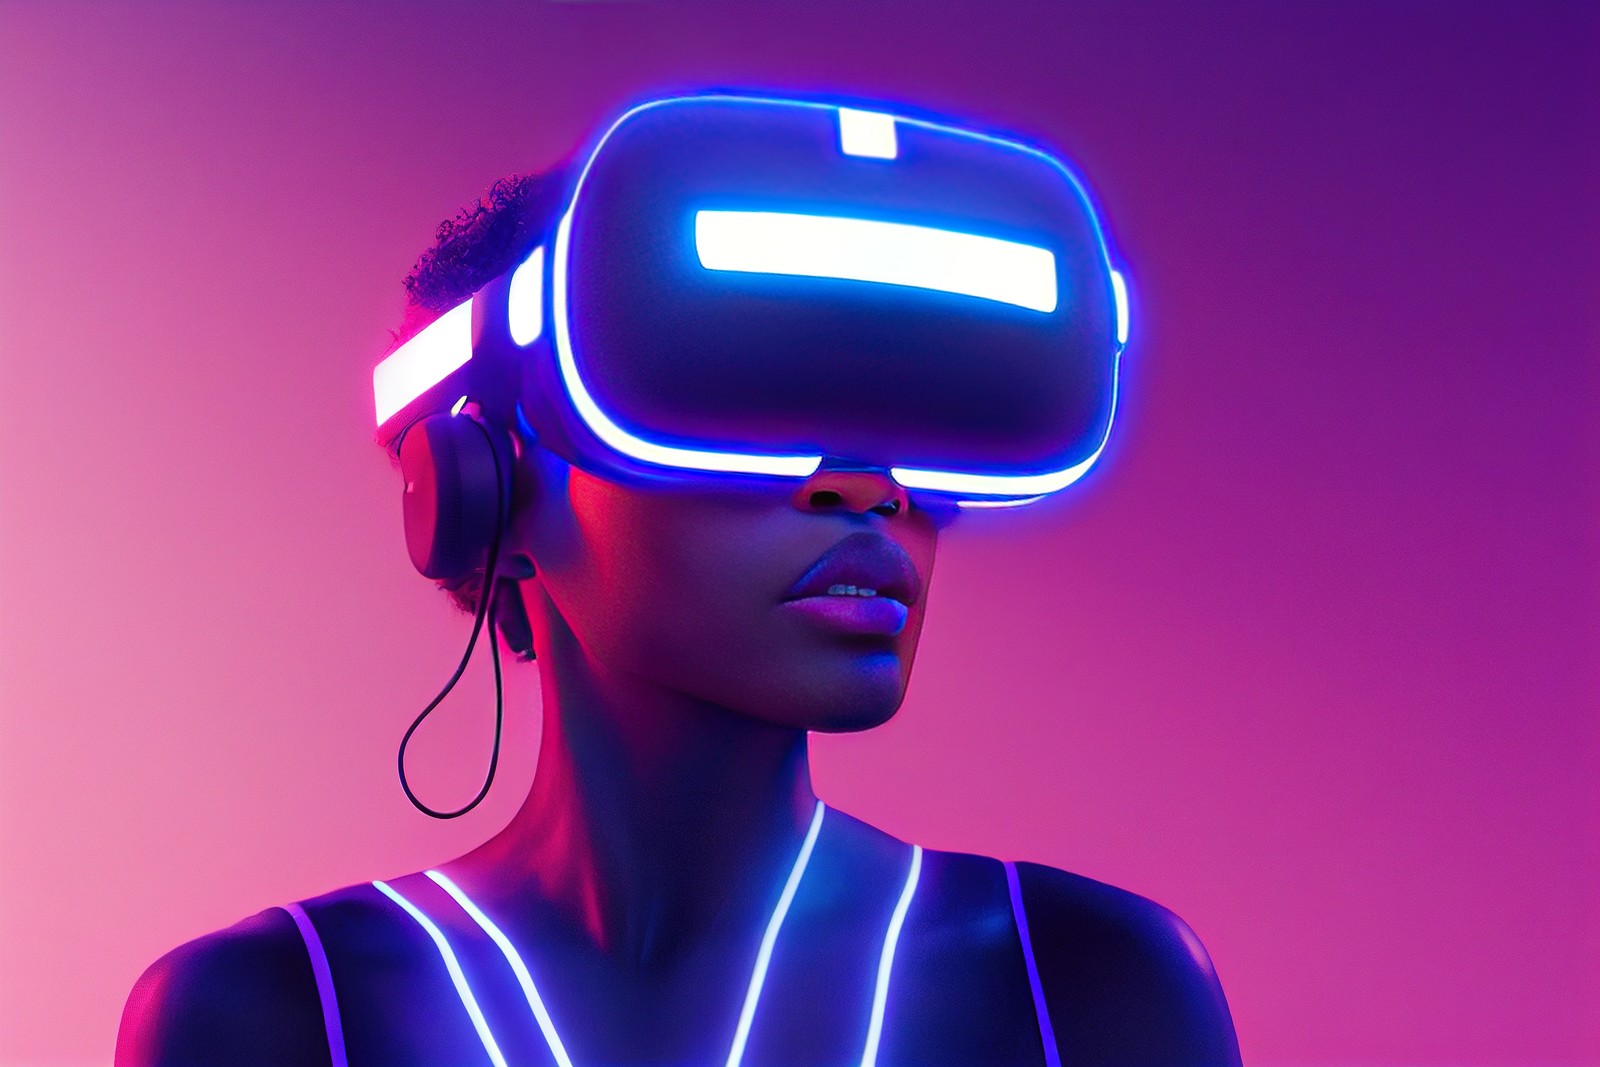 图片展示了一位女性佩戴着虚拟现实头盔和耳机，身体轮廓发光，背景是紫色调的光影效果。